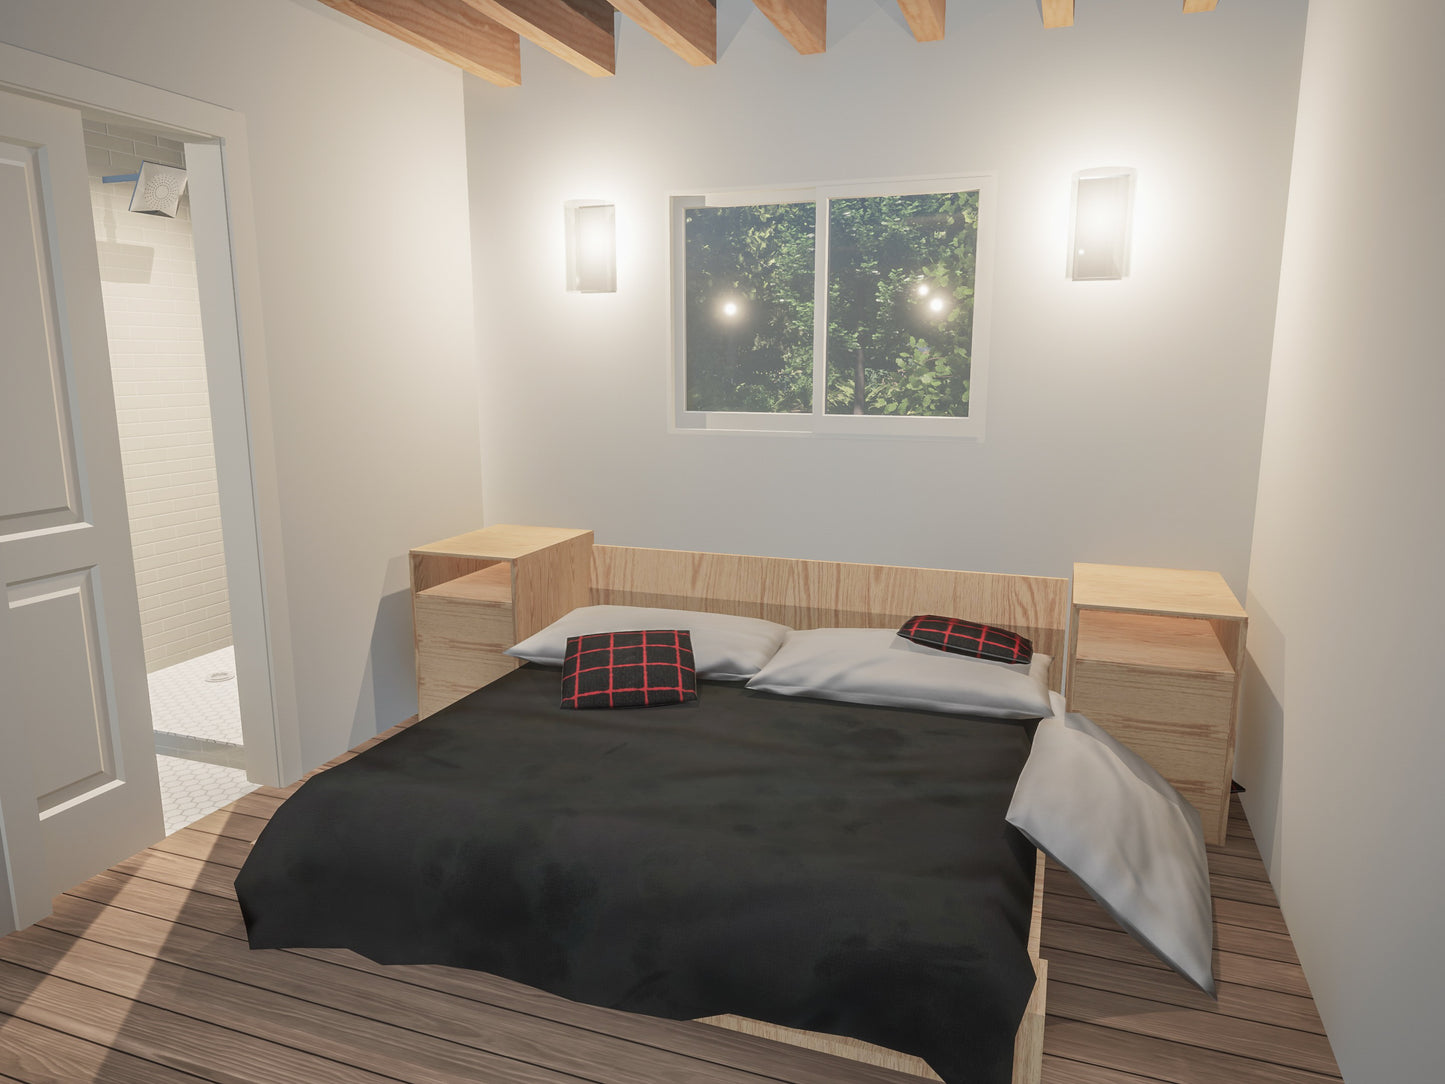 Modern Redwood "A Frame" Cabin Plans